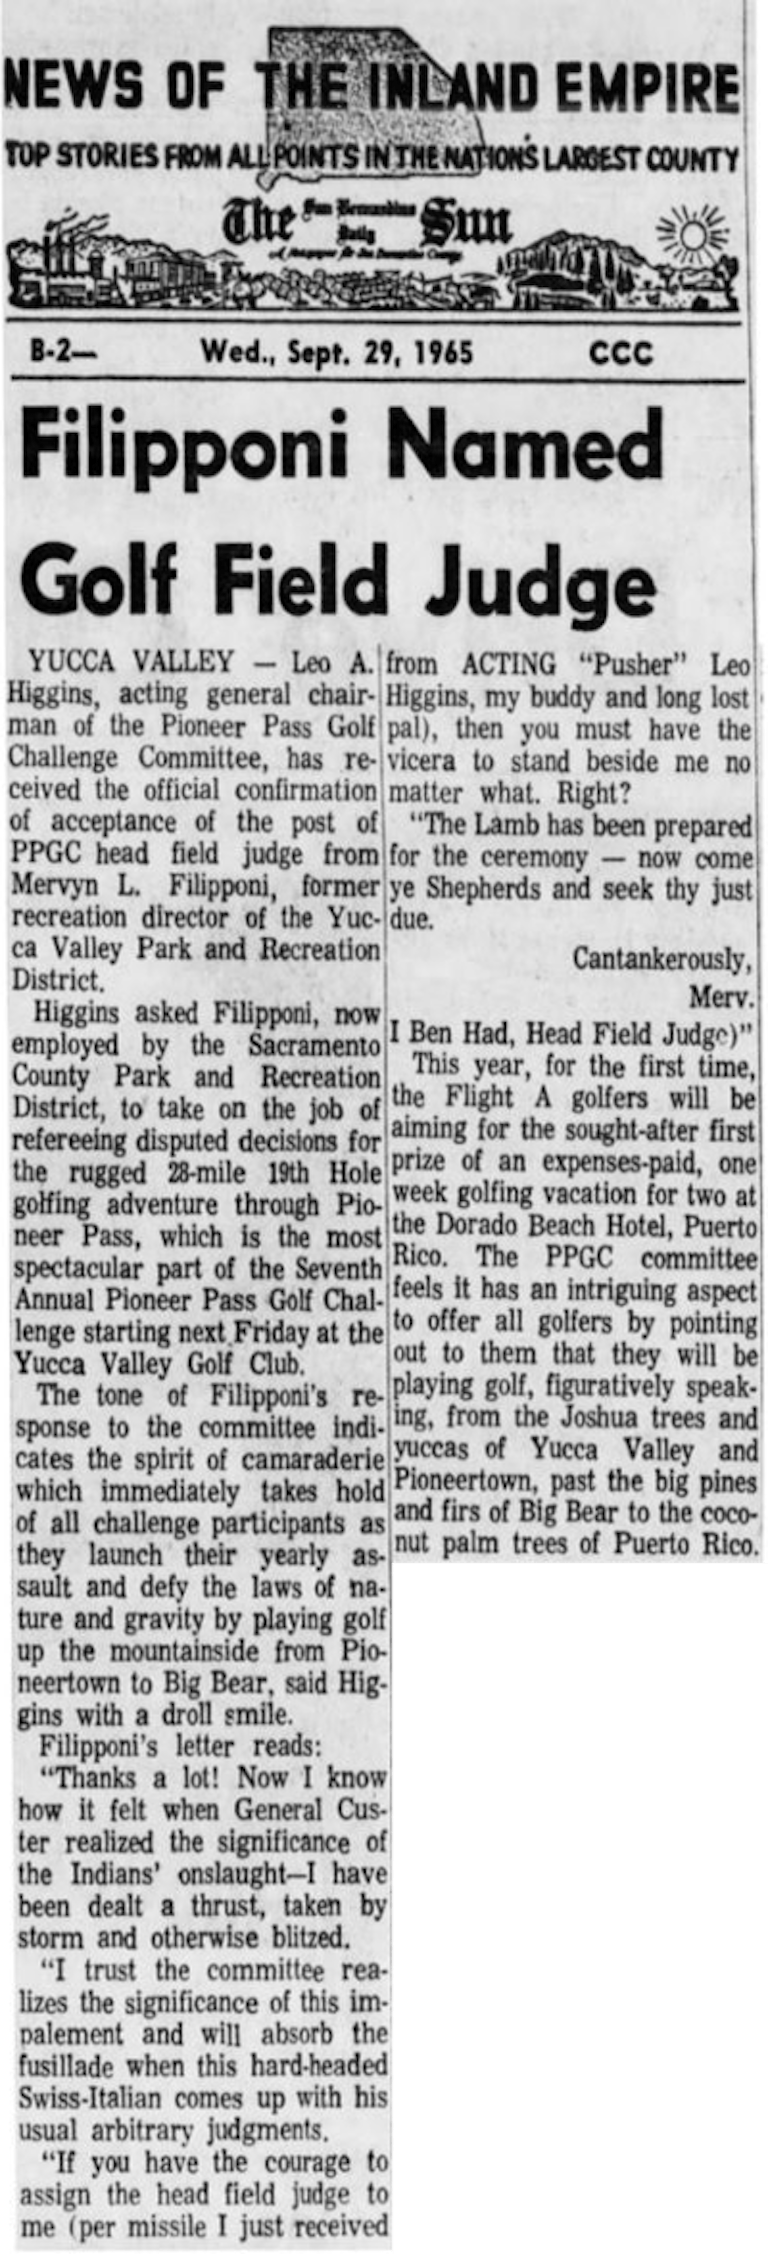 Sept. 29, 1965 - The San Bernardino County Sun article clipping